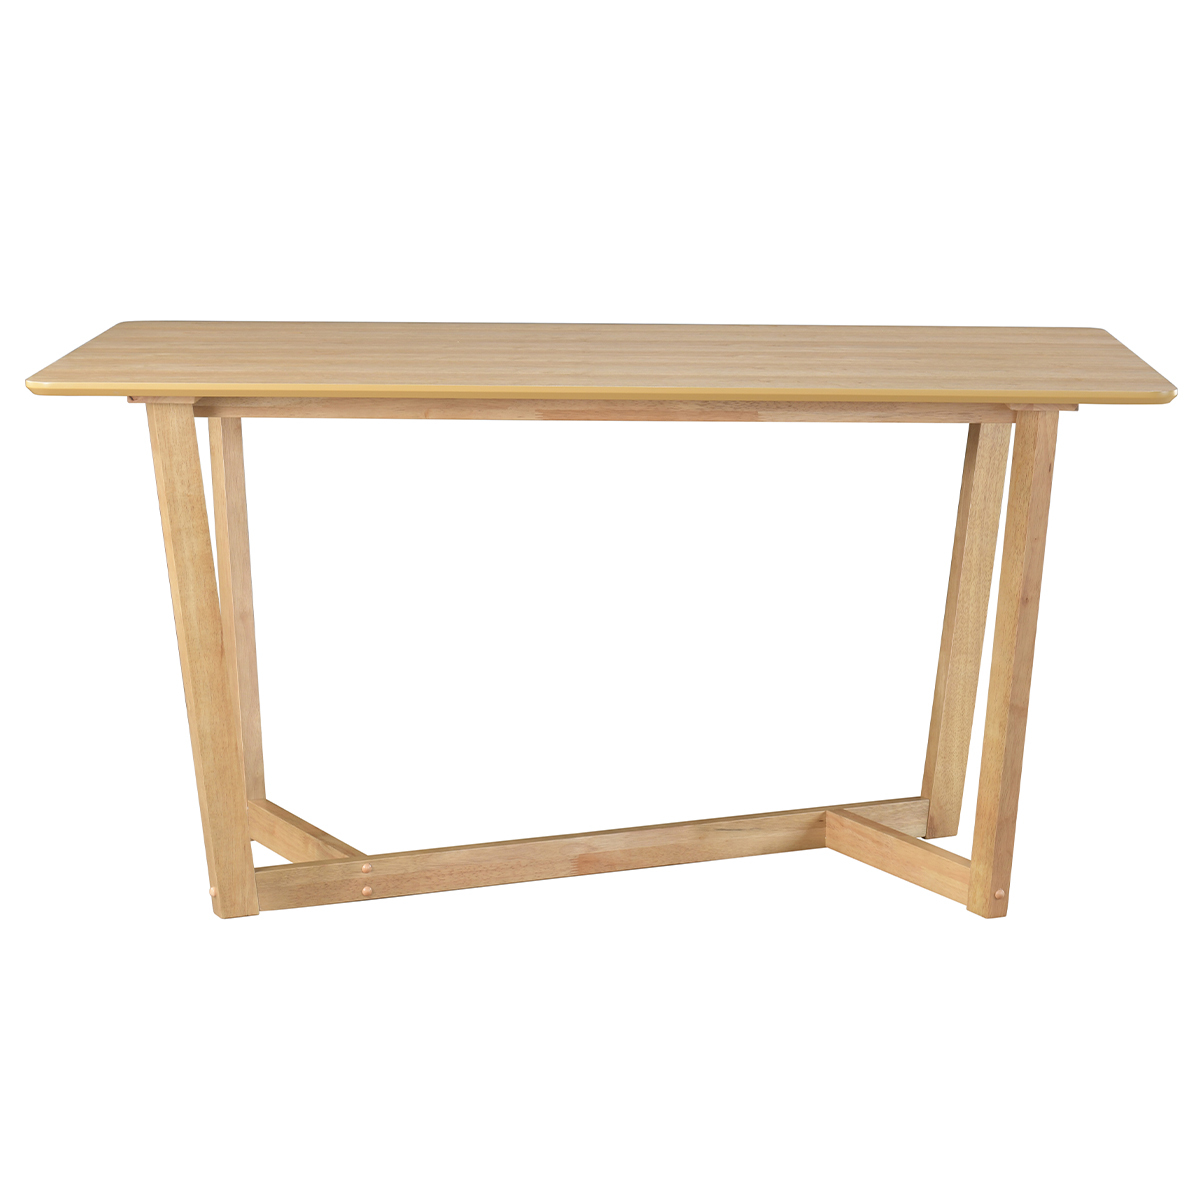 Tavolo design rettangolare in legno chiaro L150 cm KOUK